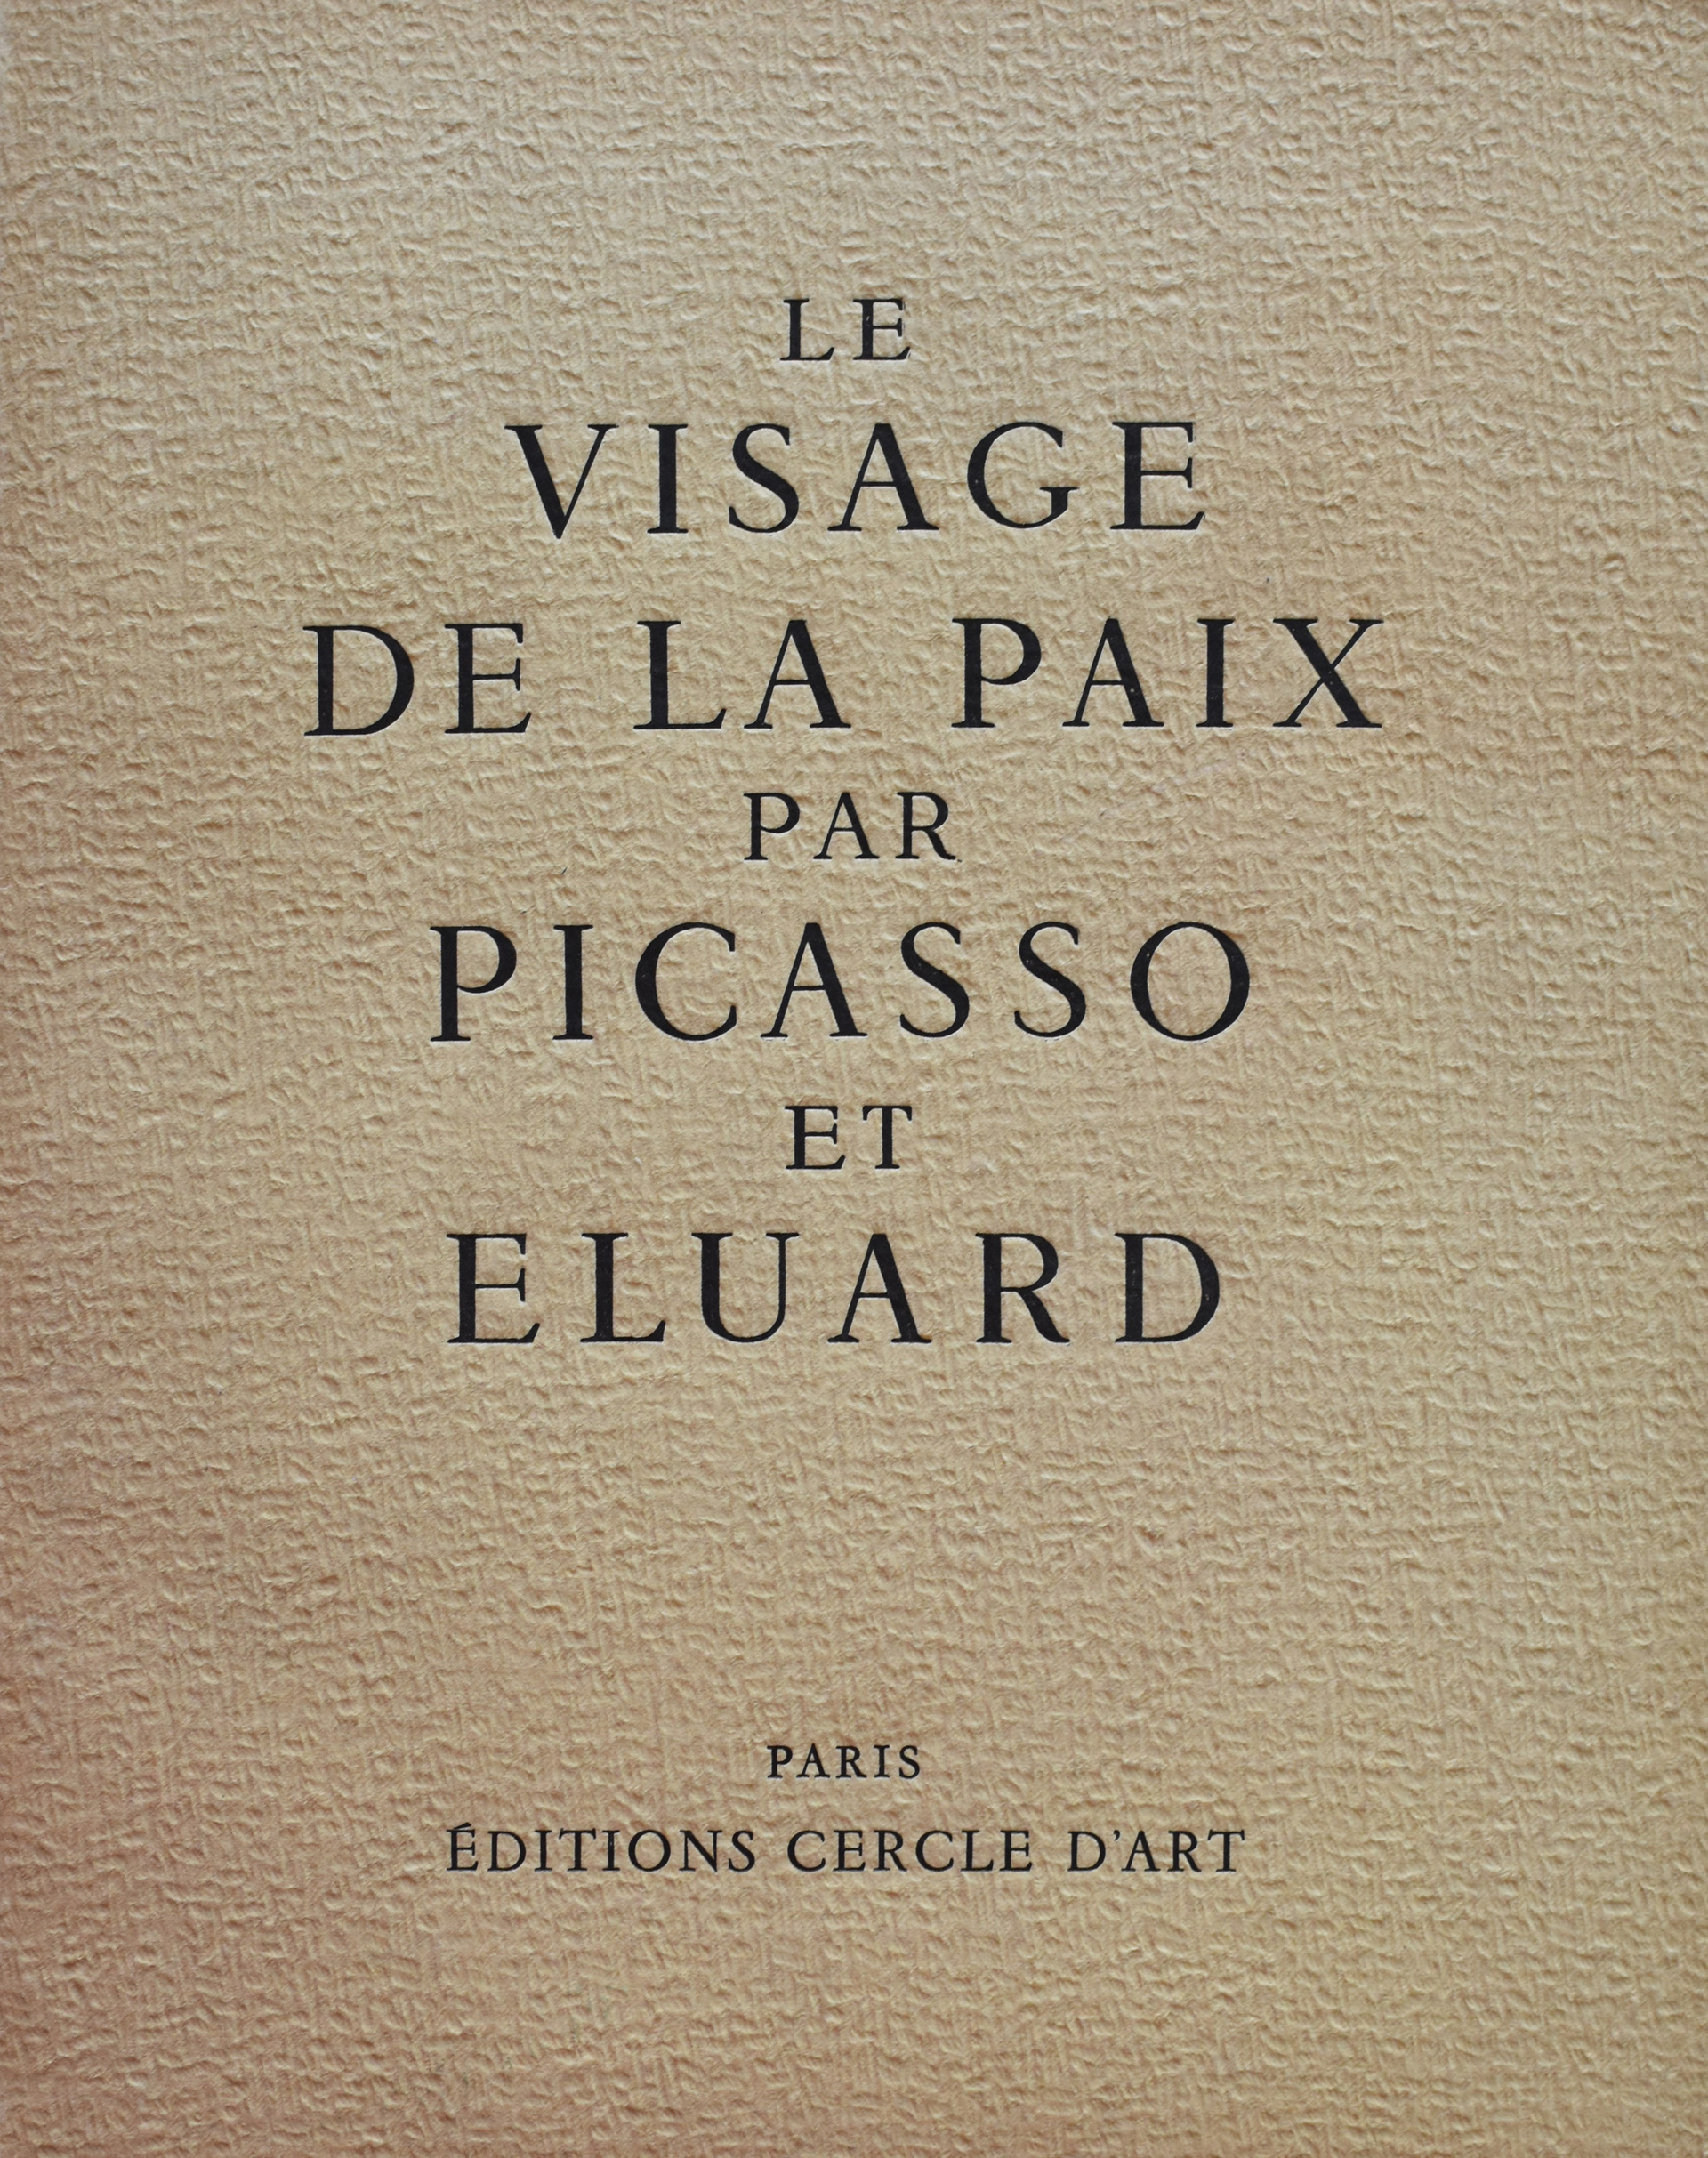 Le Visage de la Paix par Picasso et Eluard Ex 17